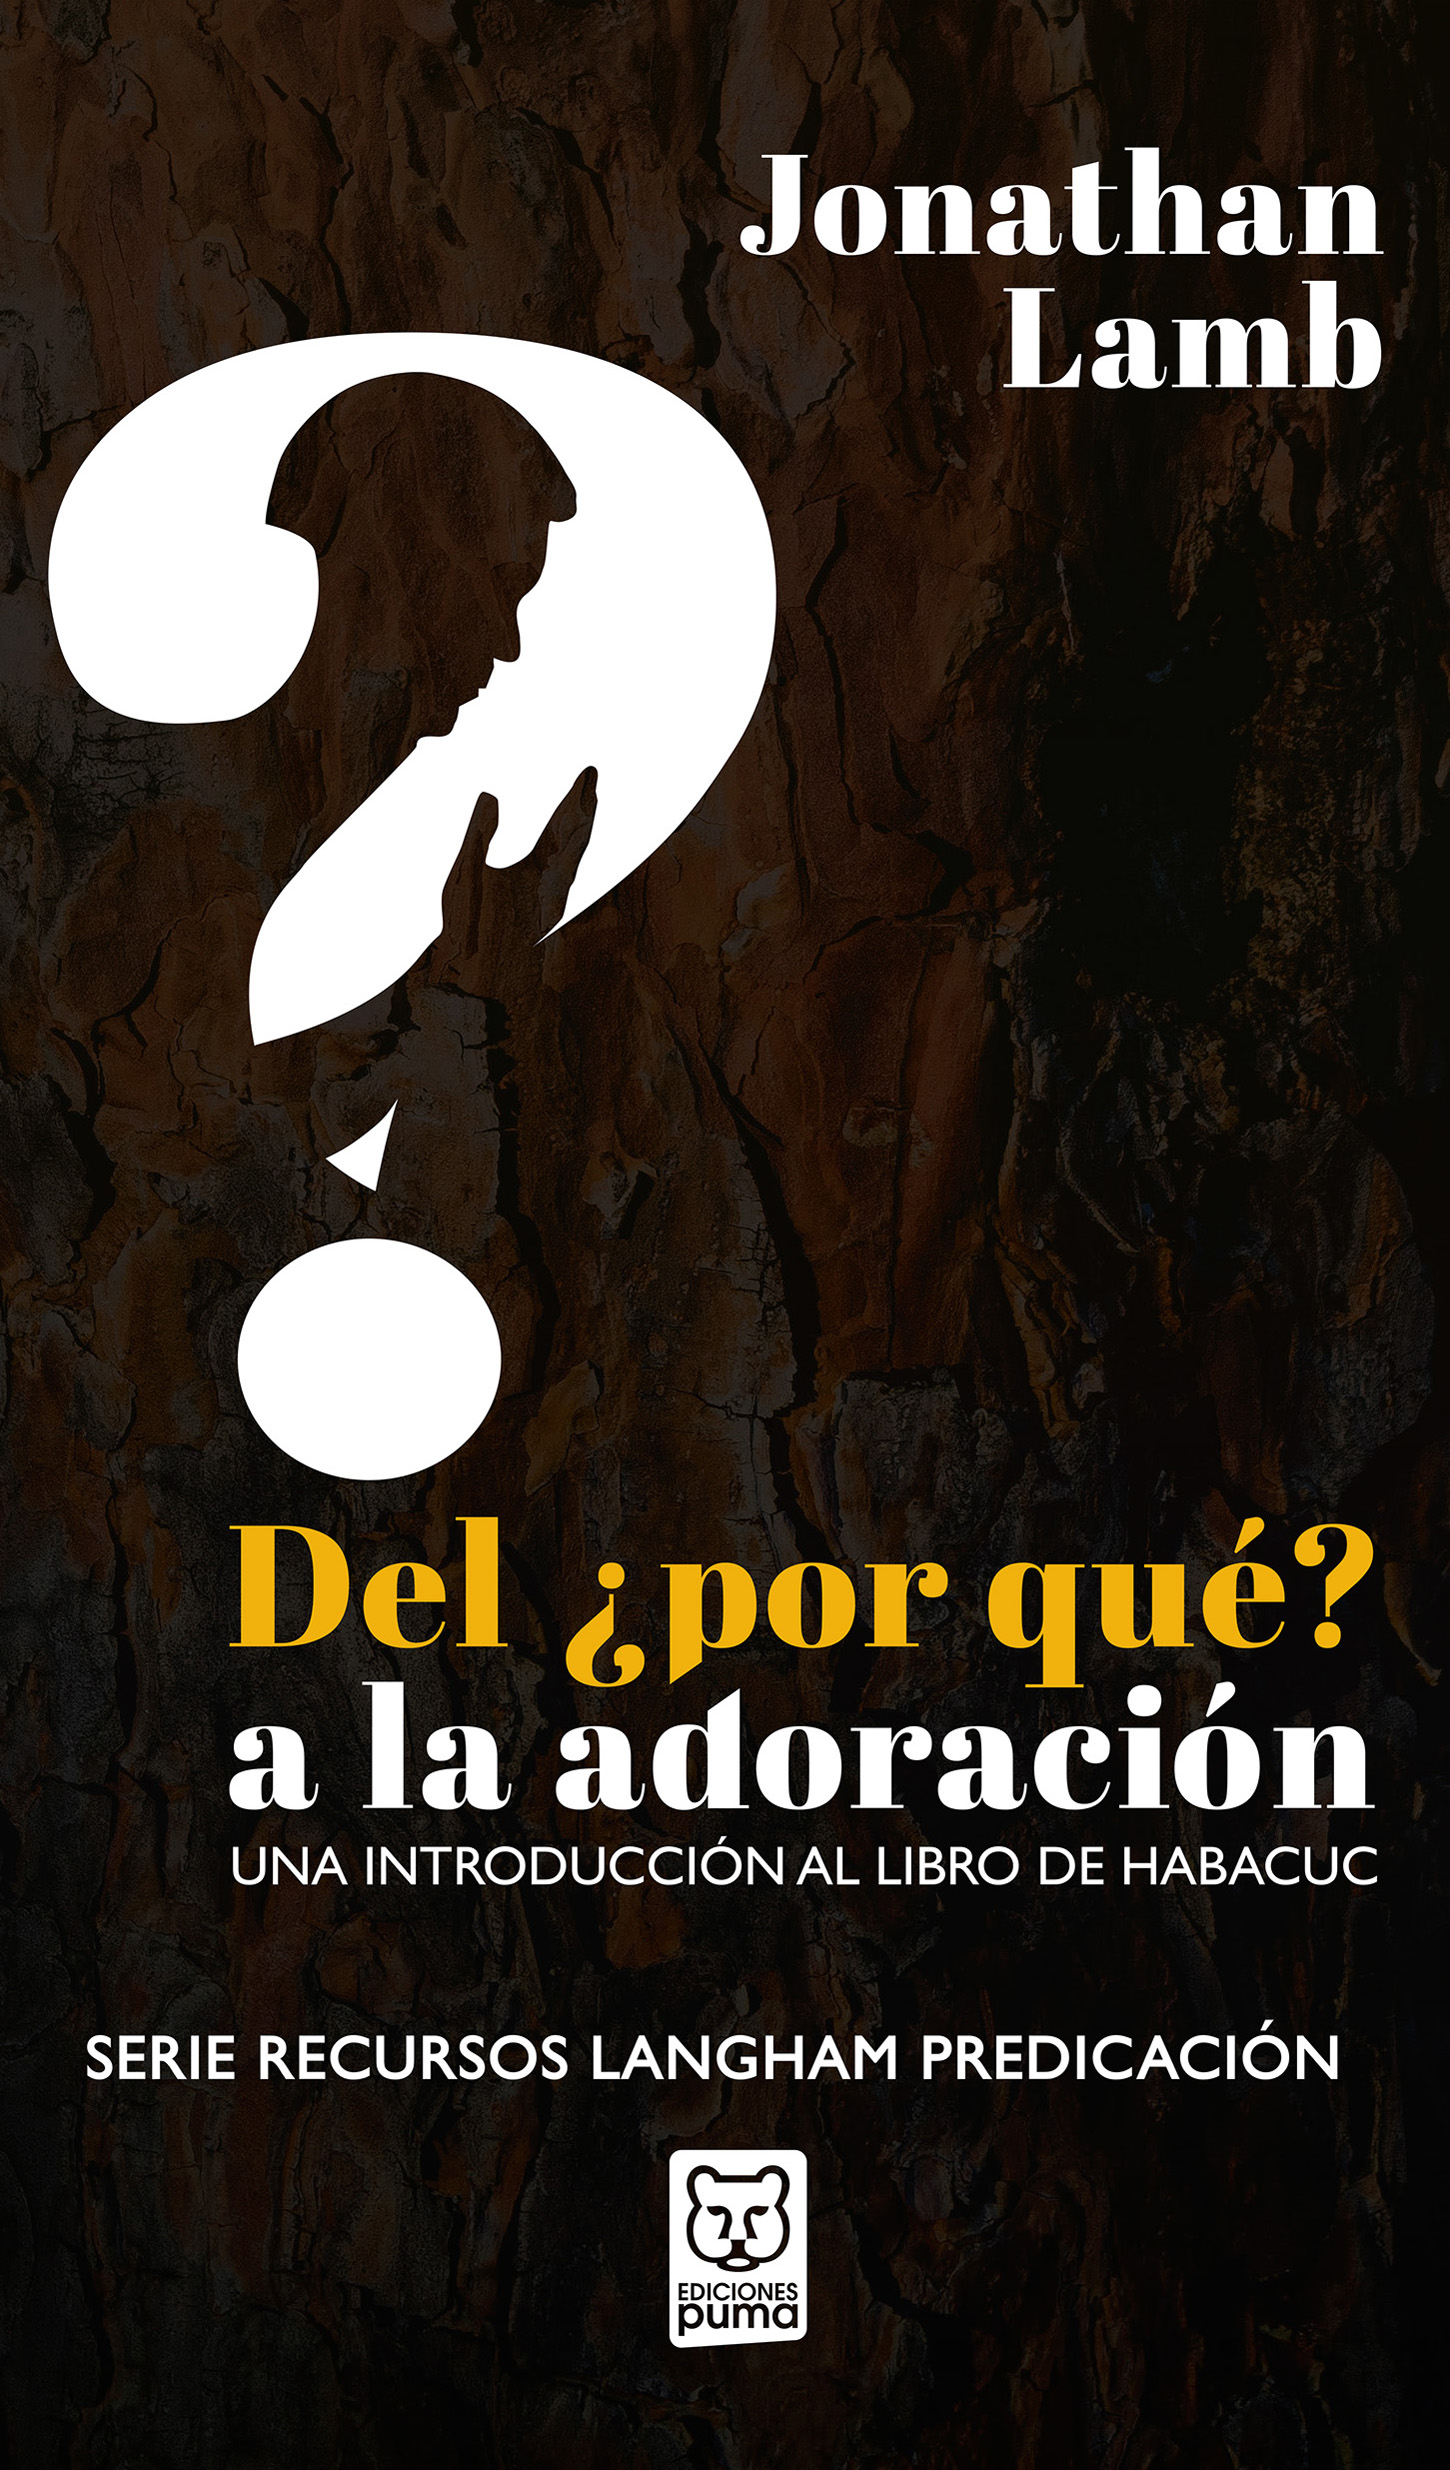 DelPorQueALaAdoracion-cover.jpg